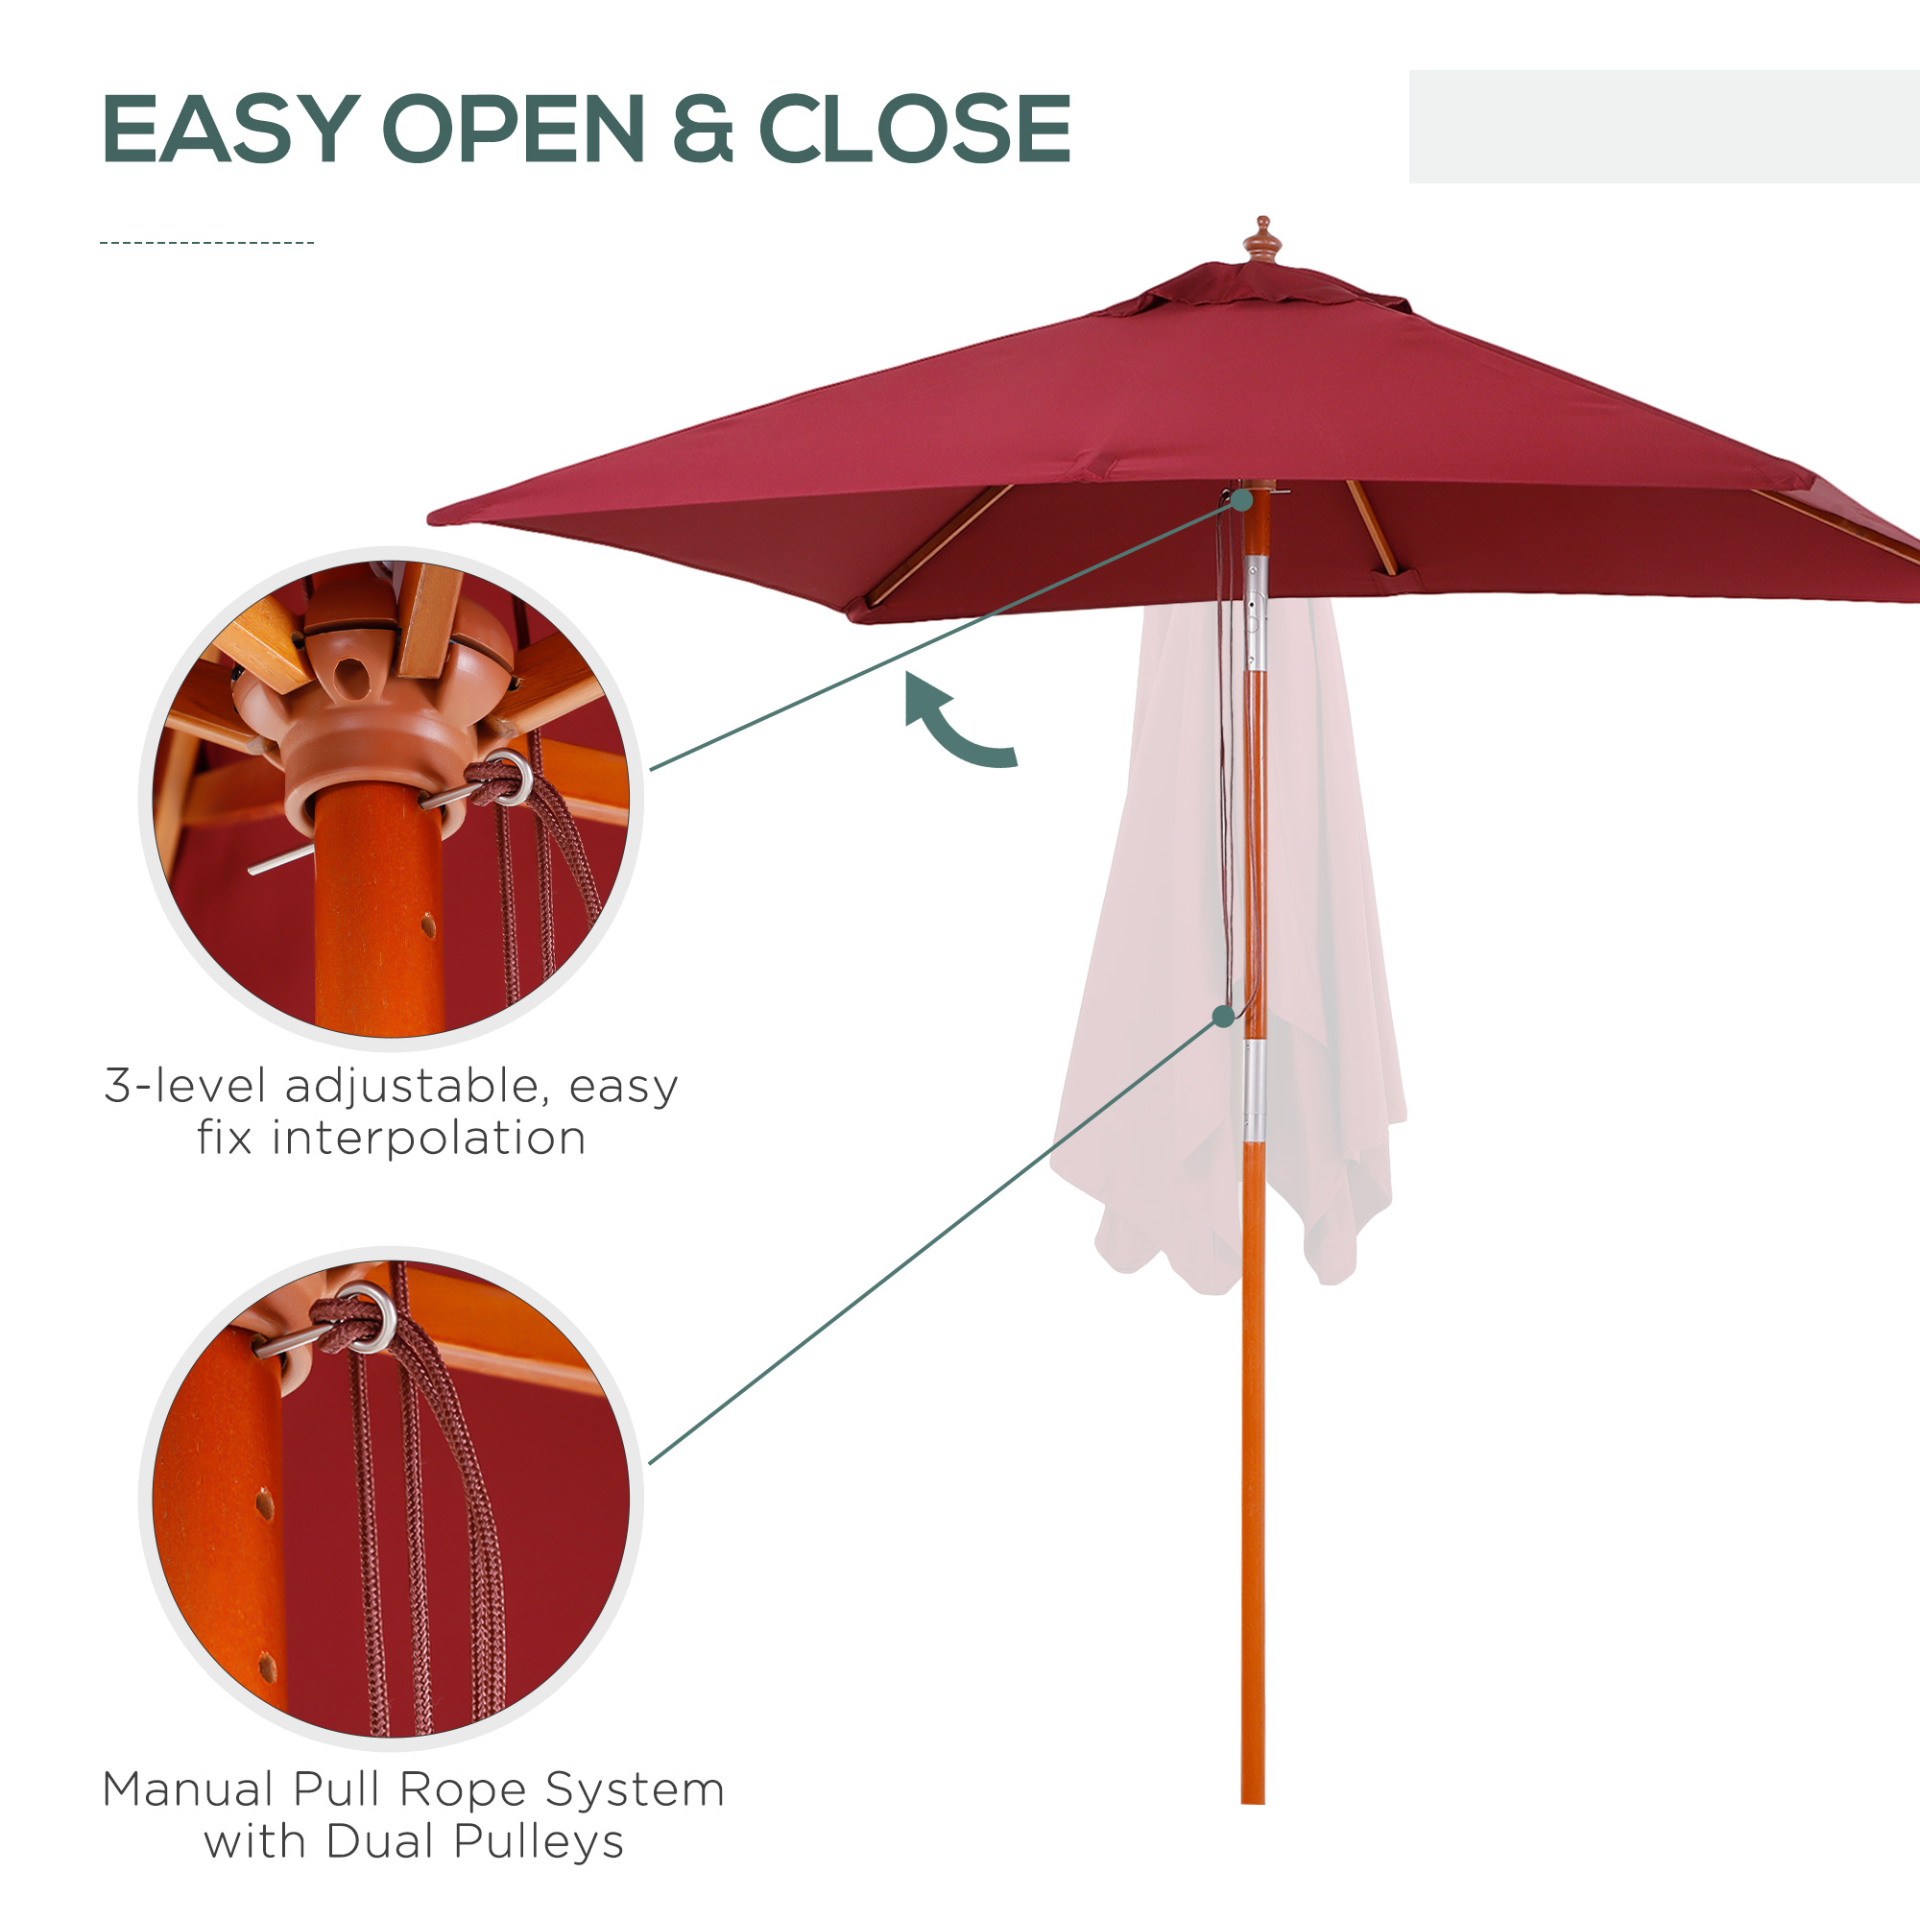 Outsunny 2m x 1.5m Patio Parasol Garden Umbrellas Sun Umbrella Bamboo Sunshade Canopy Outdoor Backyard Furniture Fir Wooden Pole 6 Ribs Tilt Mechanism - Wine Red